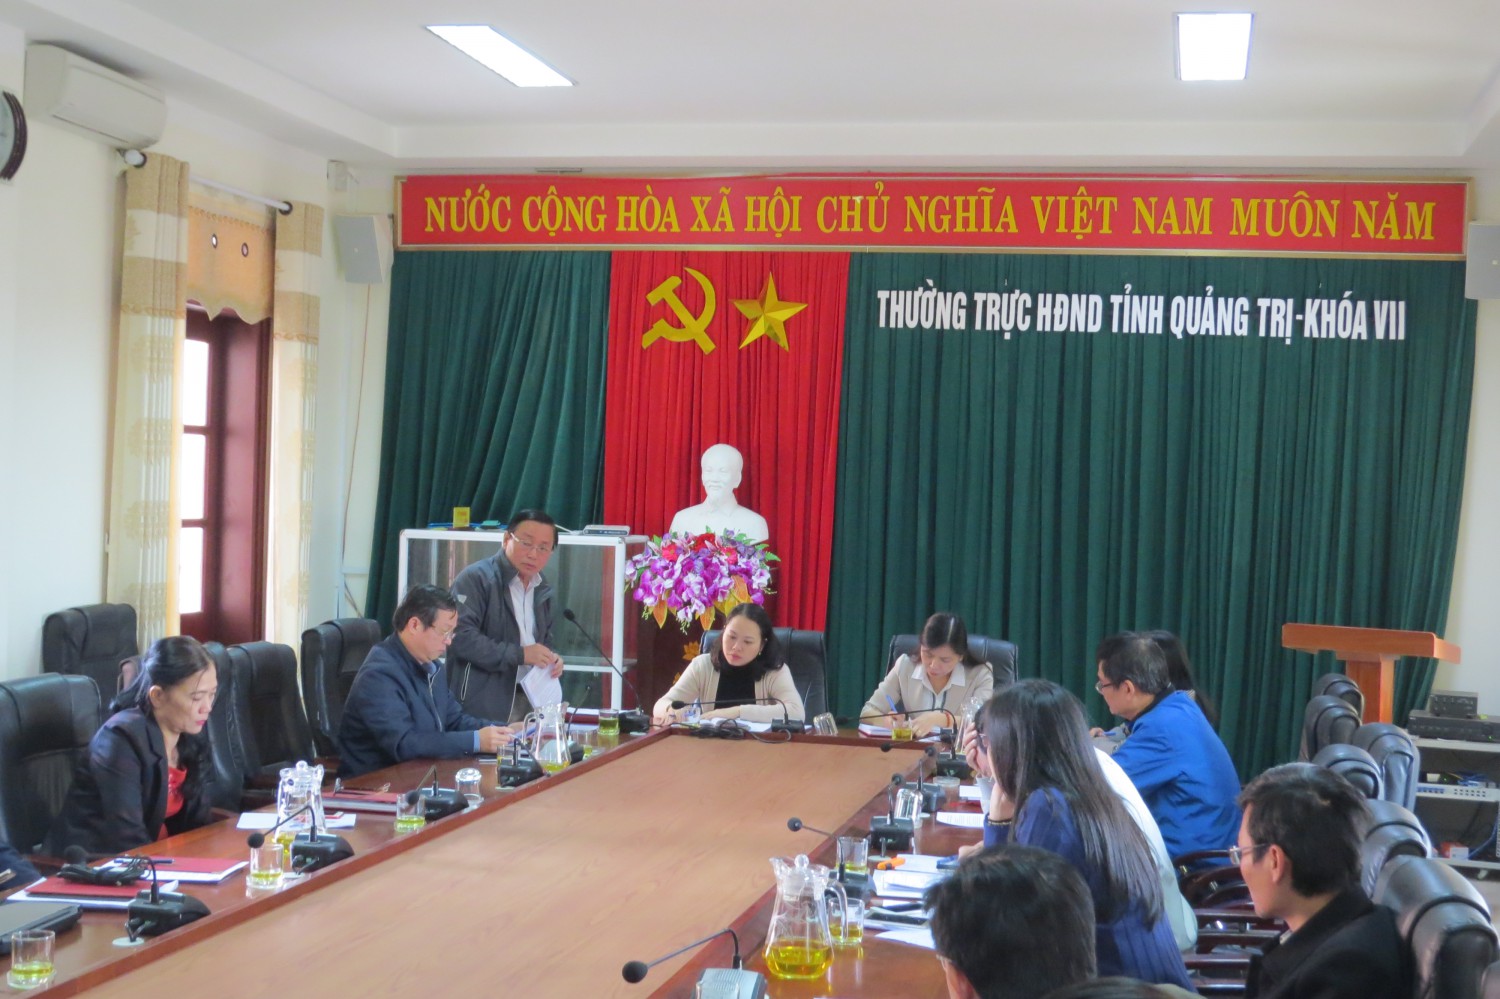 Đồng chí Nguyễn Đức Đũng, Ủy viên Ban Thường vụ Tỉnh ủy, Phó Chủ tịch HĐND tỉnh phát biểu chỉ đạo tại buổi họp